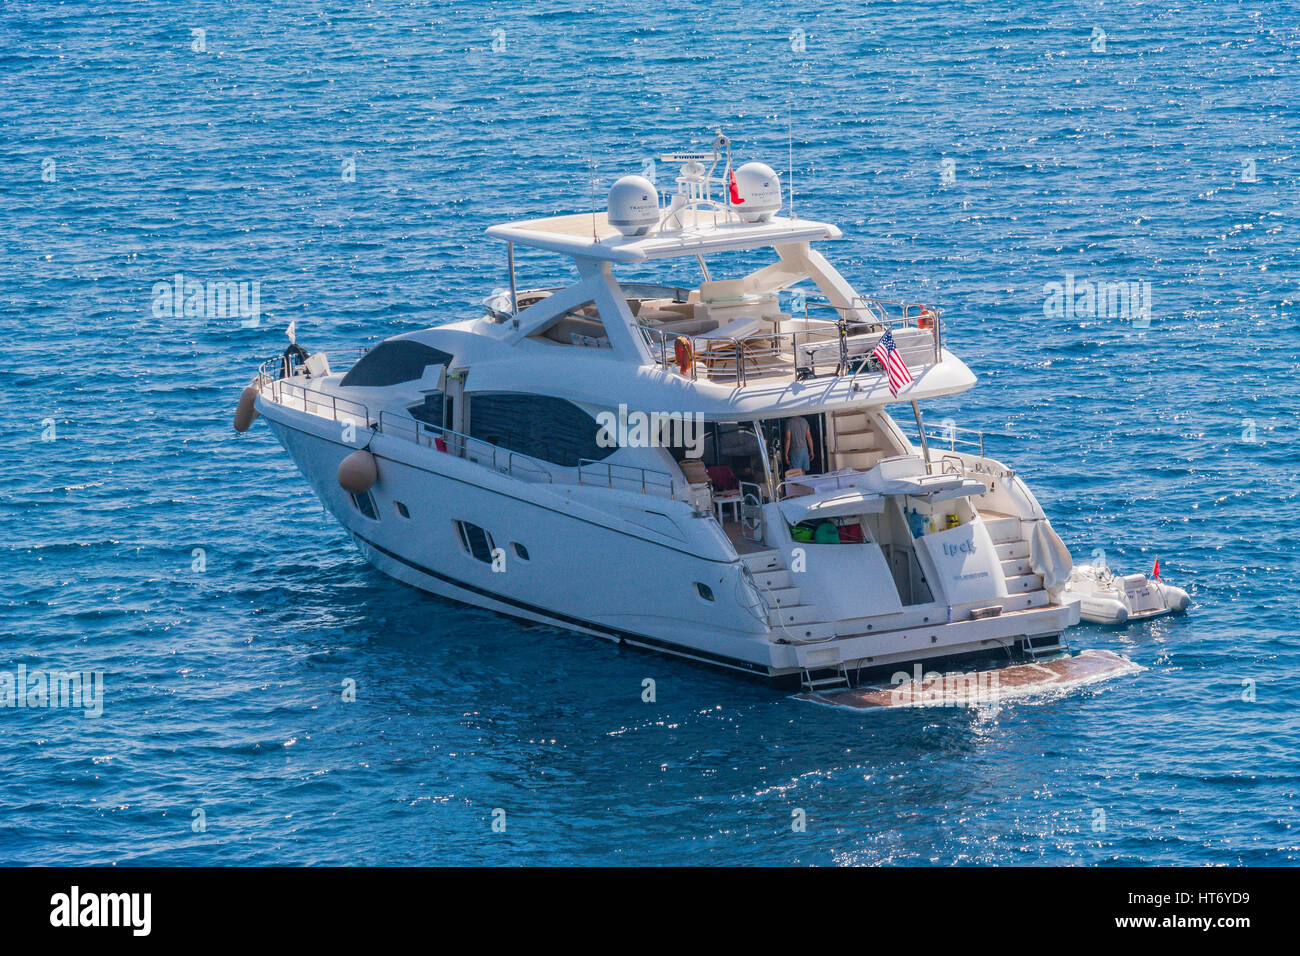 Motoryacht di lusso ancorata nella baia gocek turchia Foto Stock